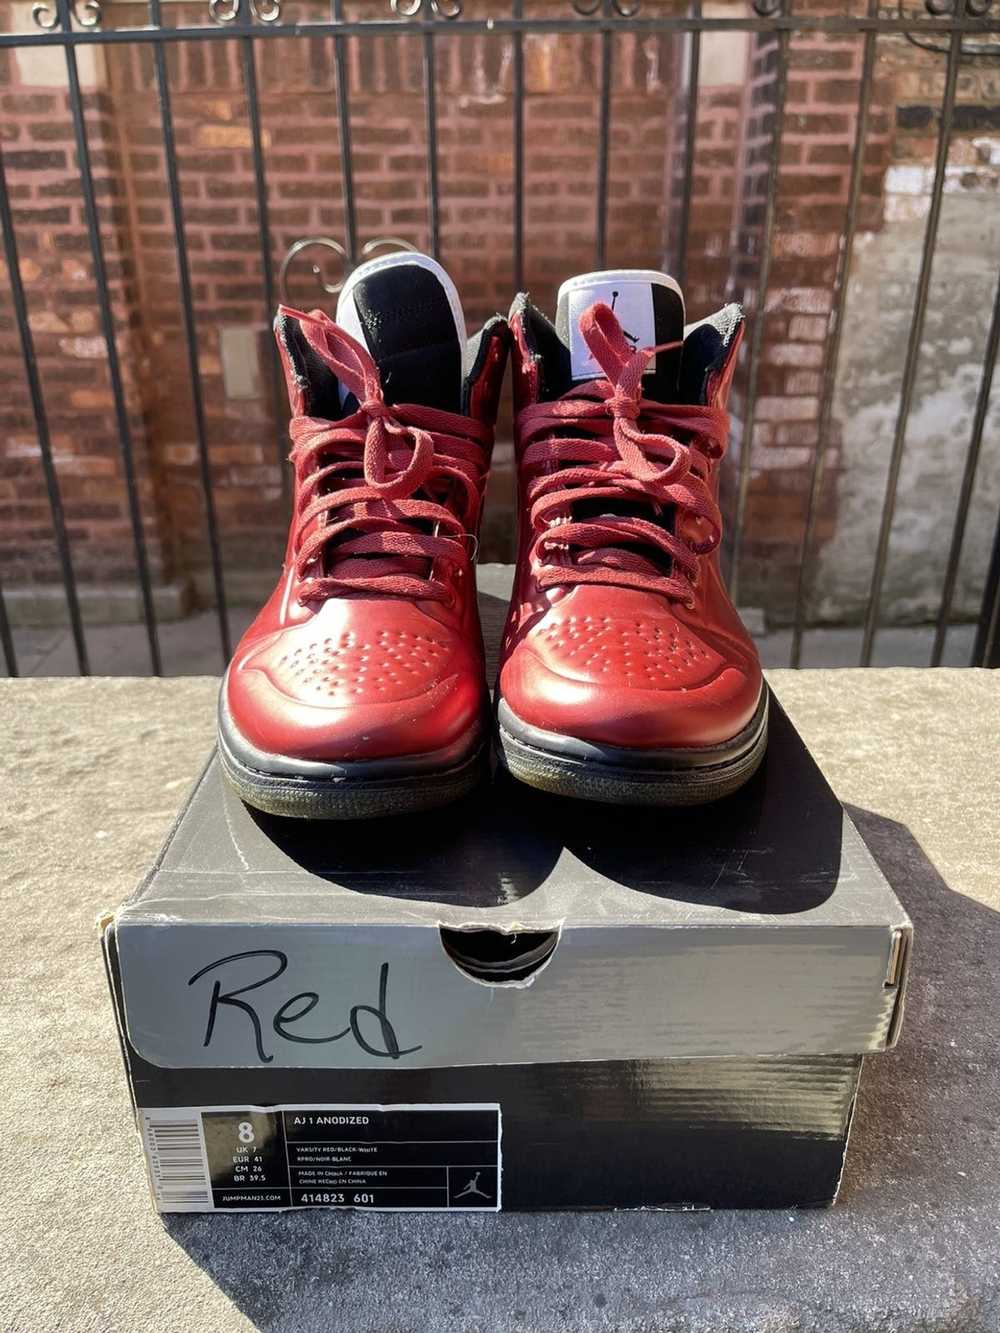 Jordan Brand × Nike Air Jordan 1 “Anodized Red” - image 1